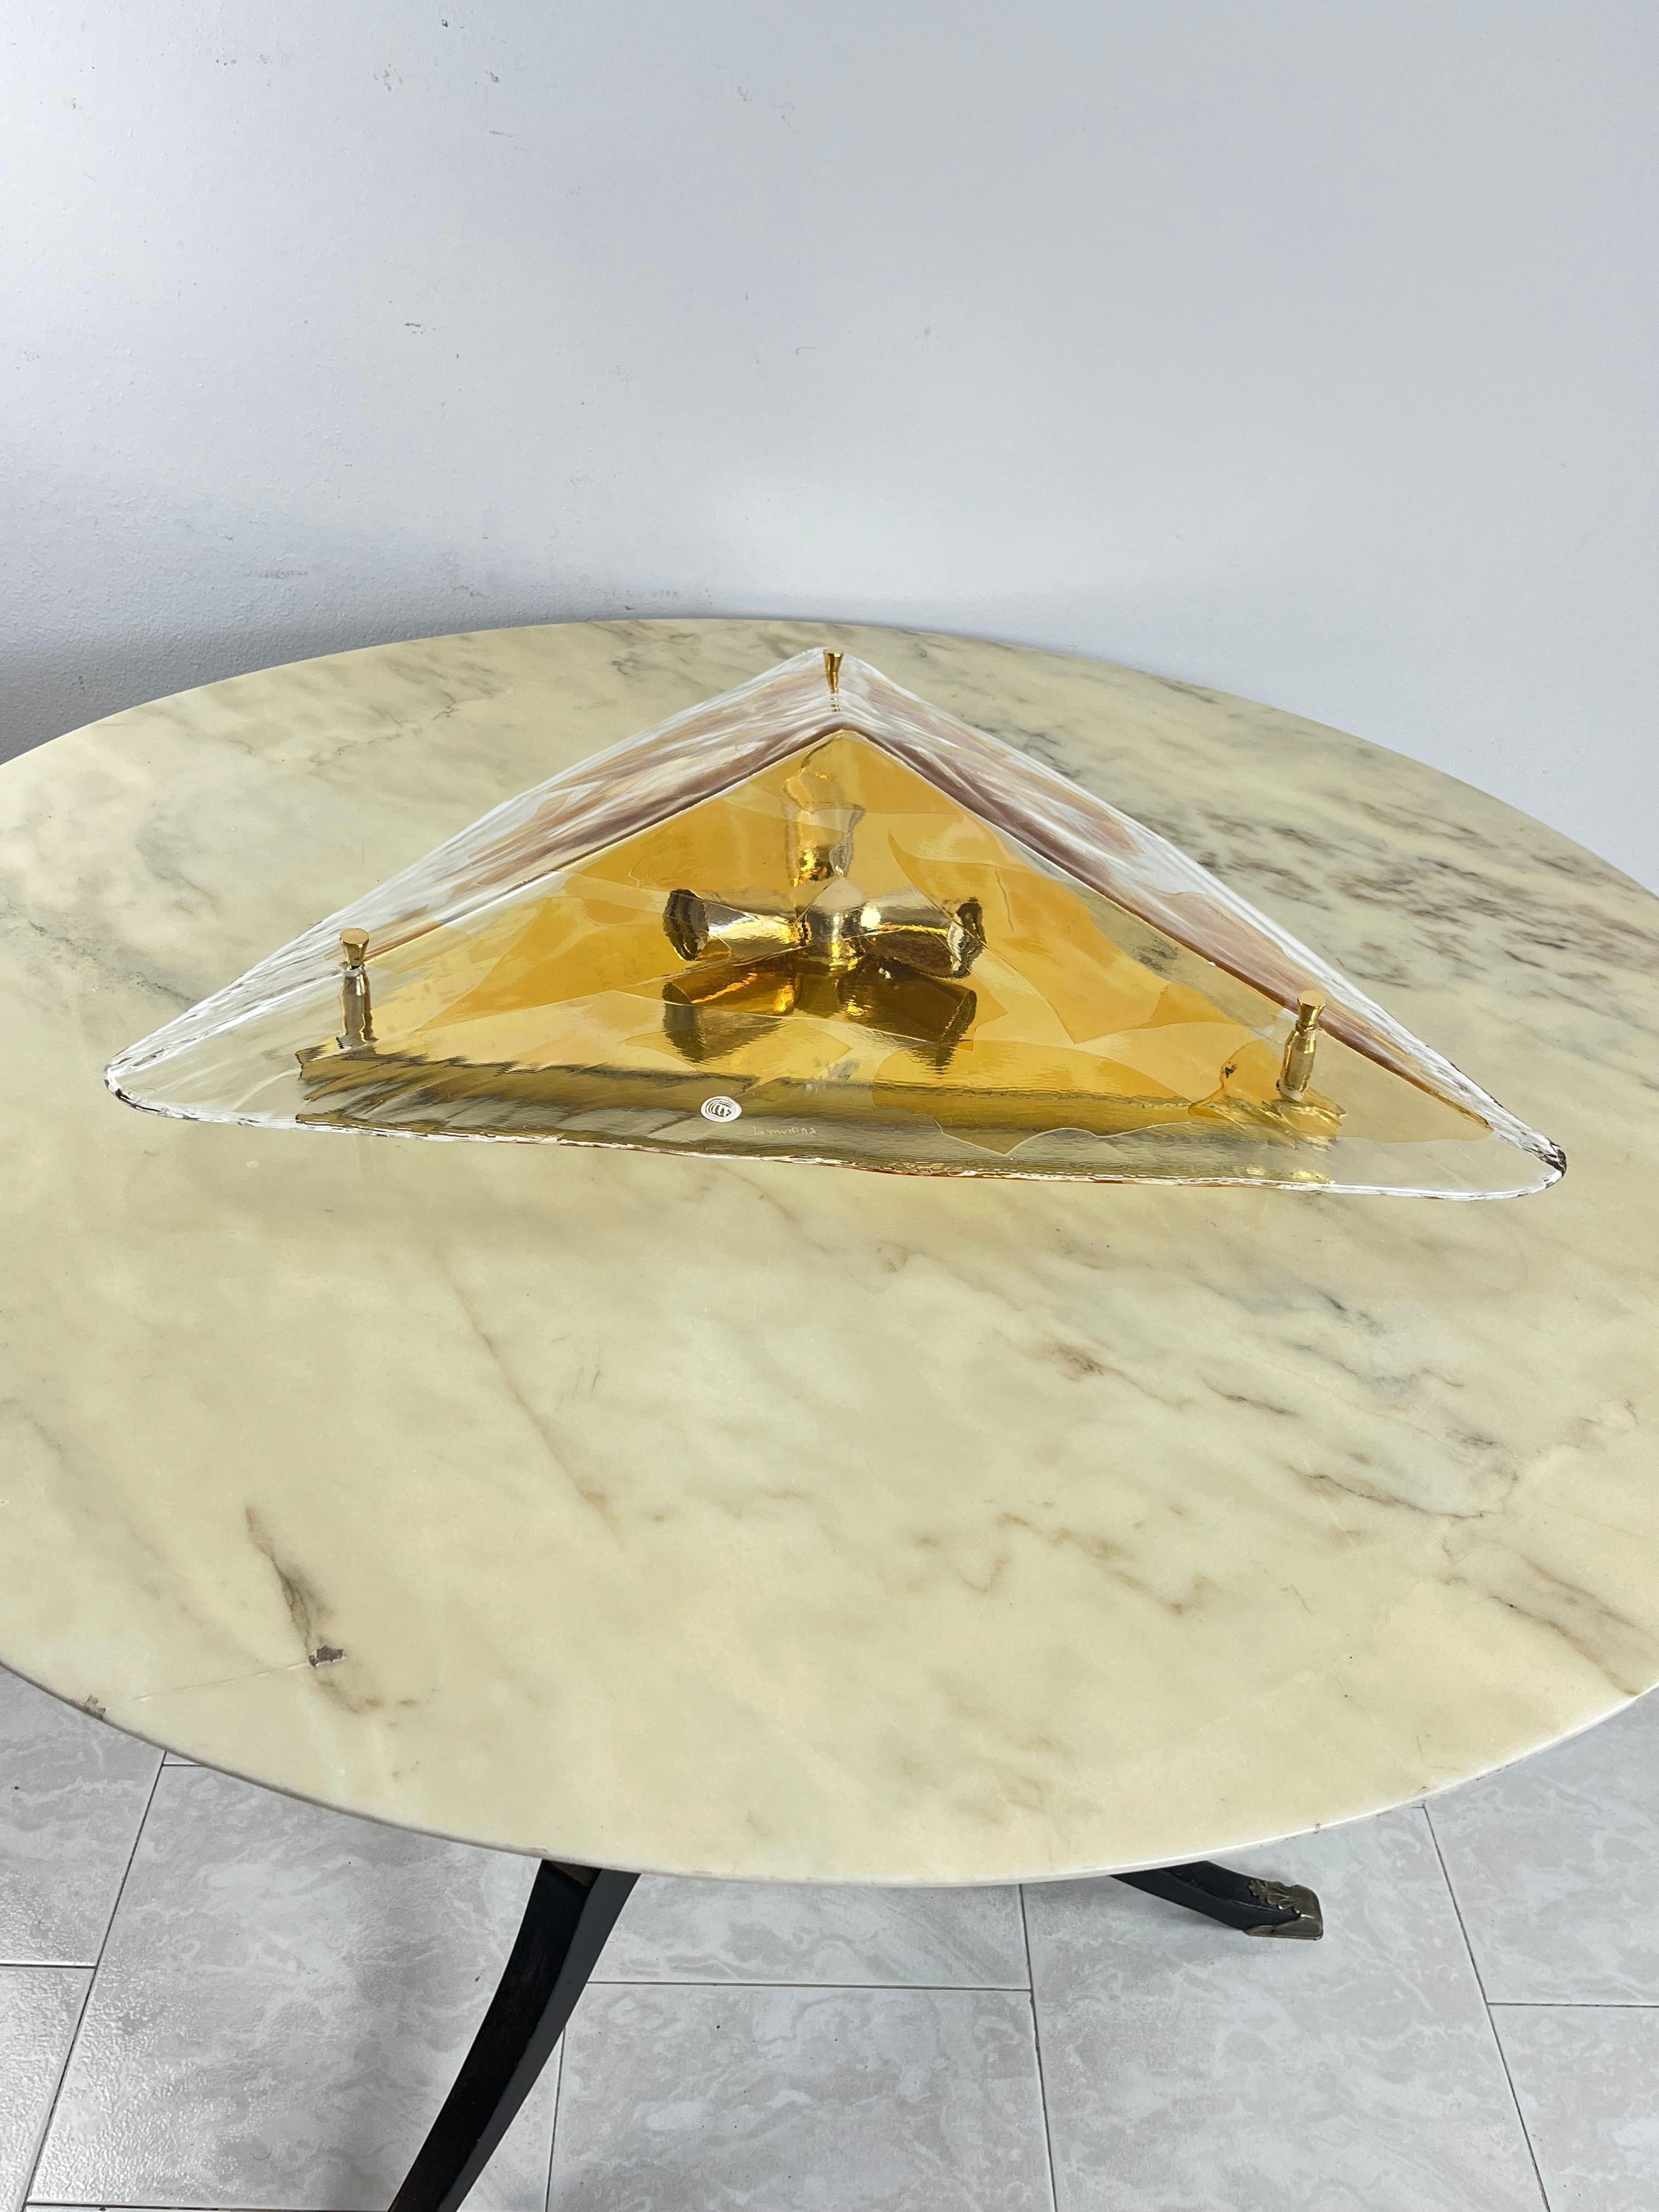 Grand plafonnier ou applique triangulaire en verre de Murano La Murrina 1980
Verre ambré et brun clair, base en métal doré.
Trois lampes E27.
Estampillé La murrina sur le verre et sur la partie métallique.
Intact et en bon état, petites et